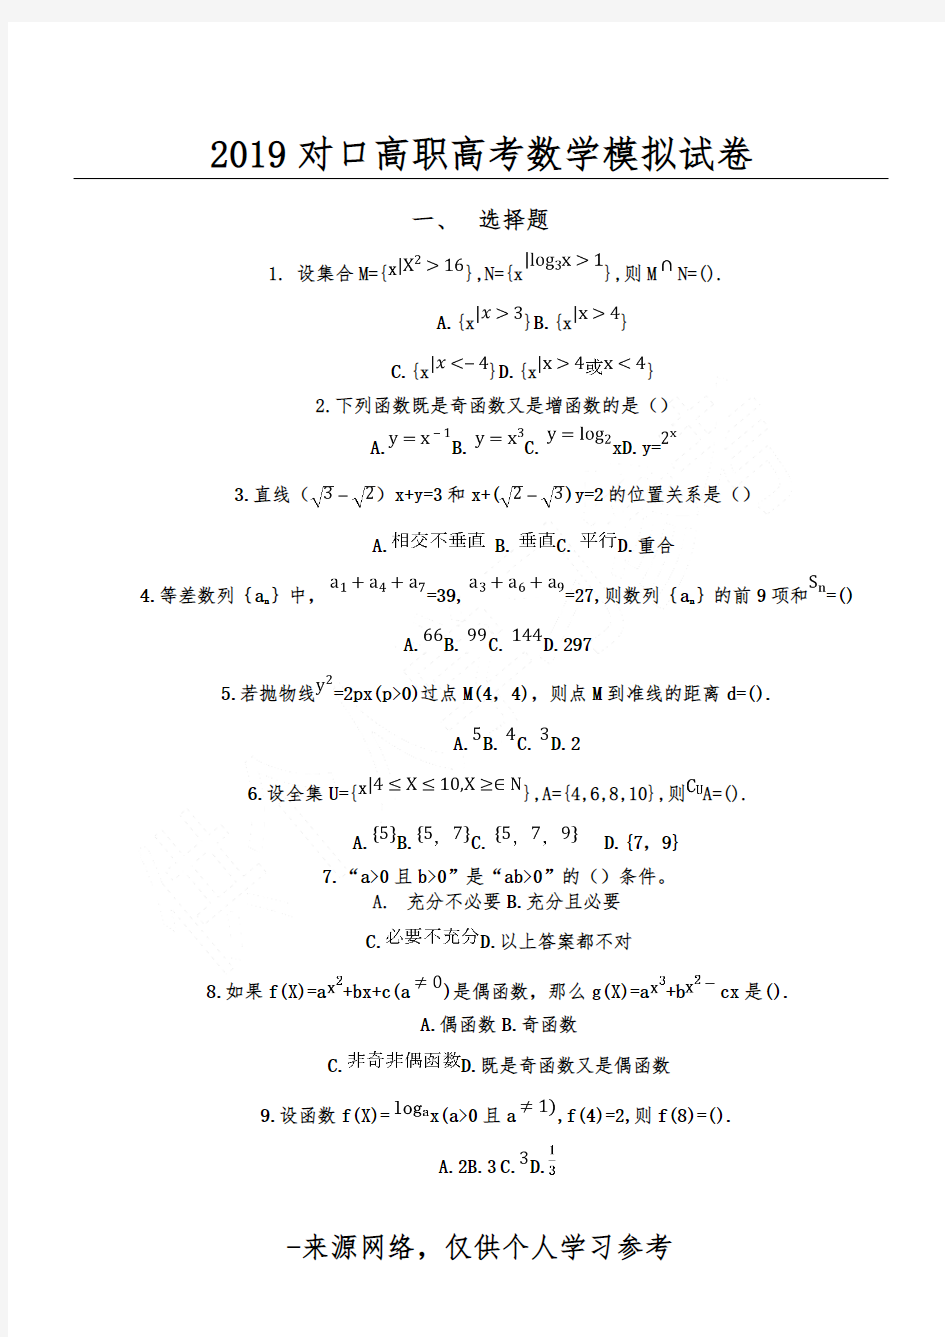 2019对口高职高考数学模拟试卷(2018.11.18)